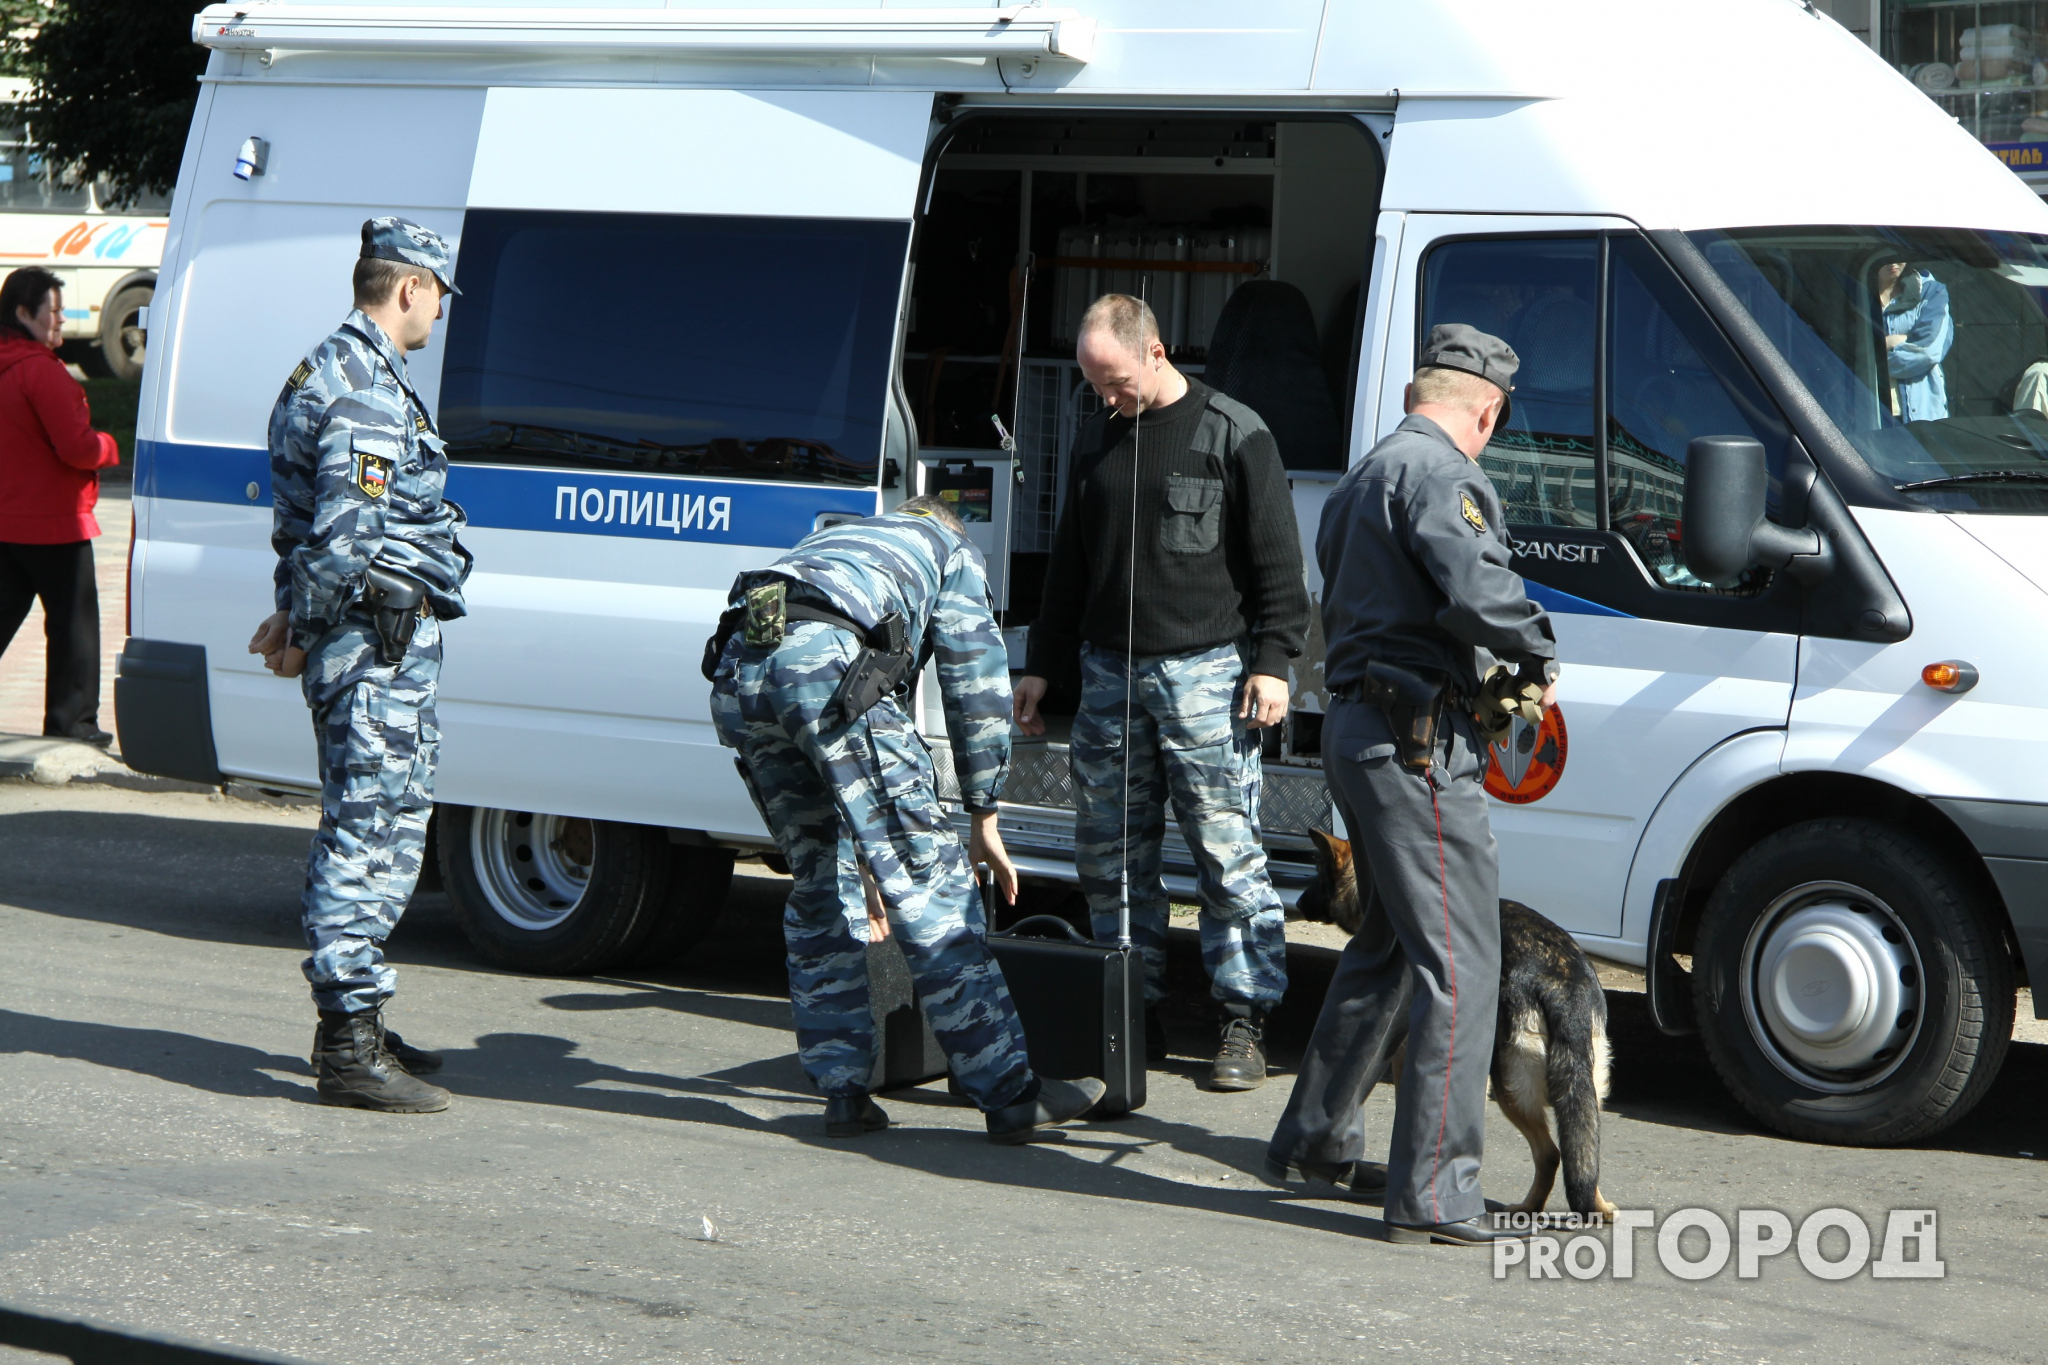 Очевидец: "В Кирове оцепили территорию из-за подозрительной игрушки"